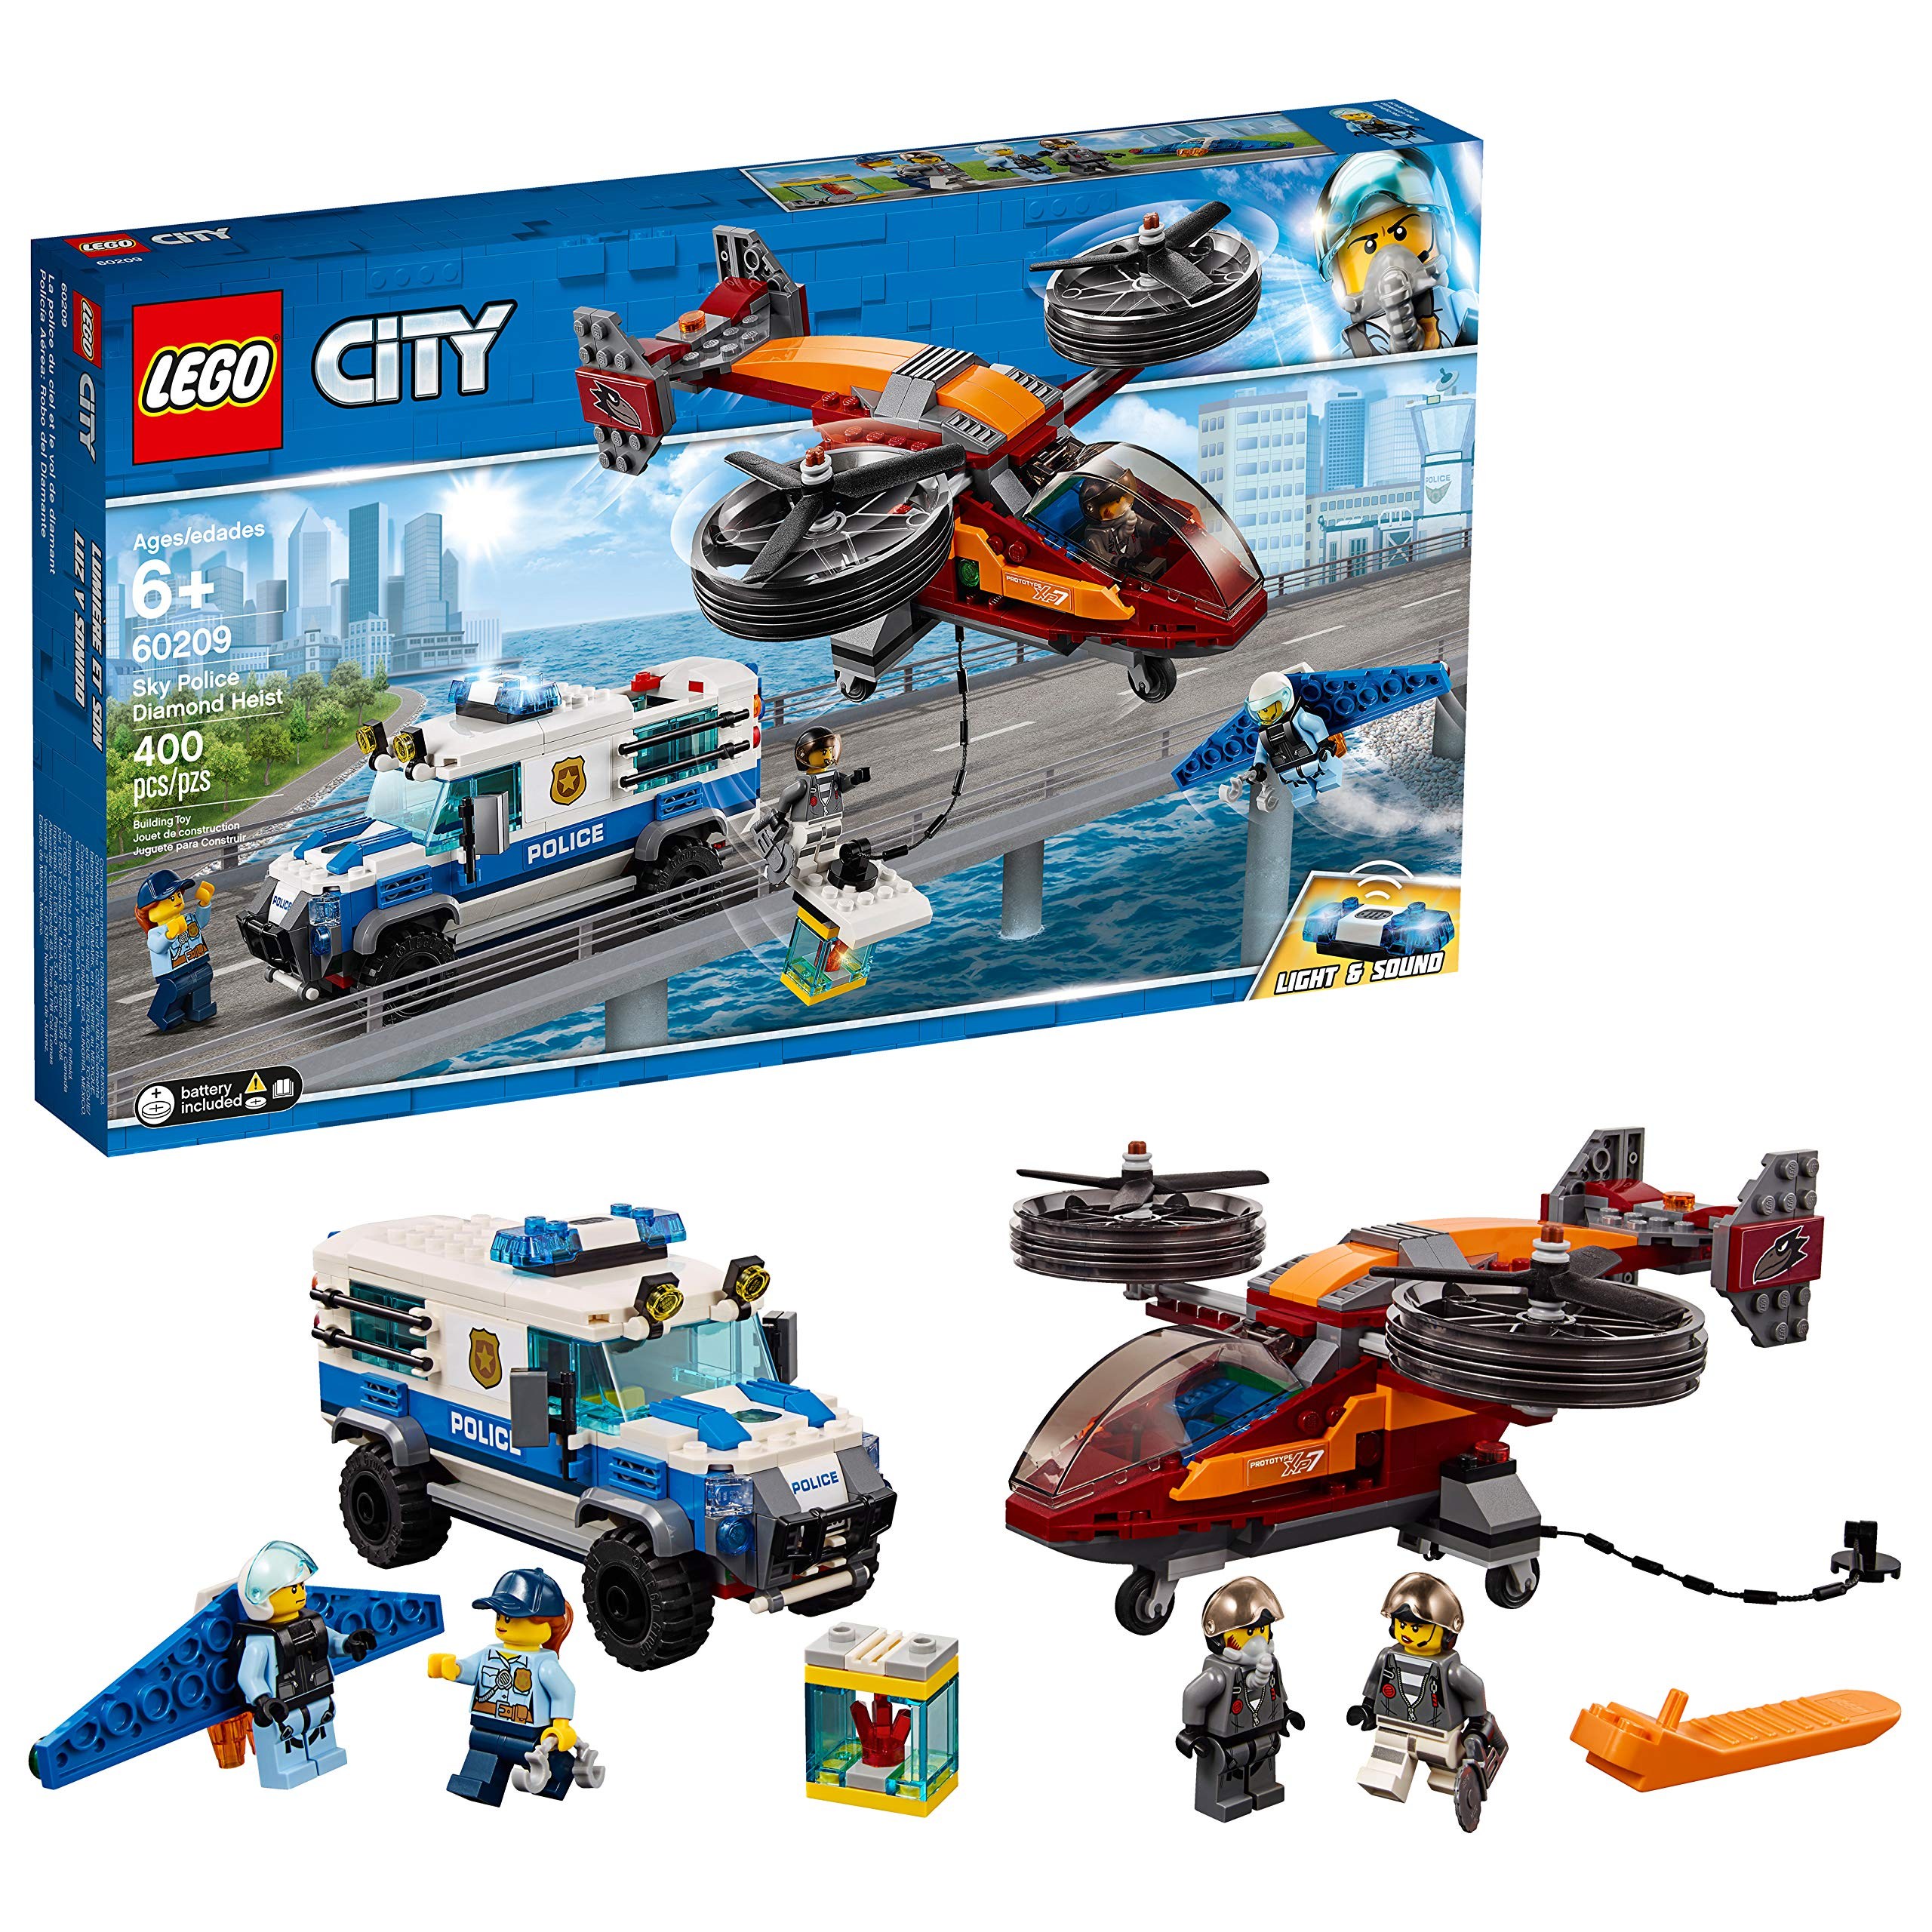 LEGO City Sky Police Diamond Heist 60209 Building Kit 2019 (400 Pieces), 본품선택 